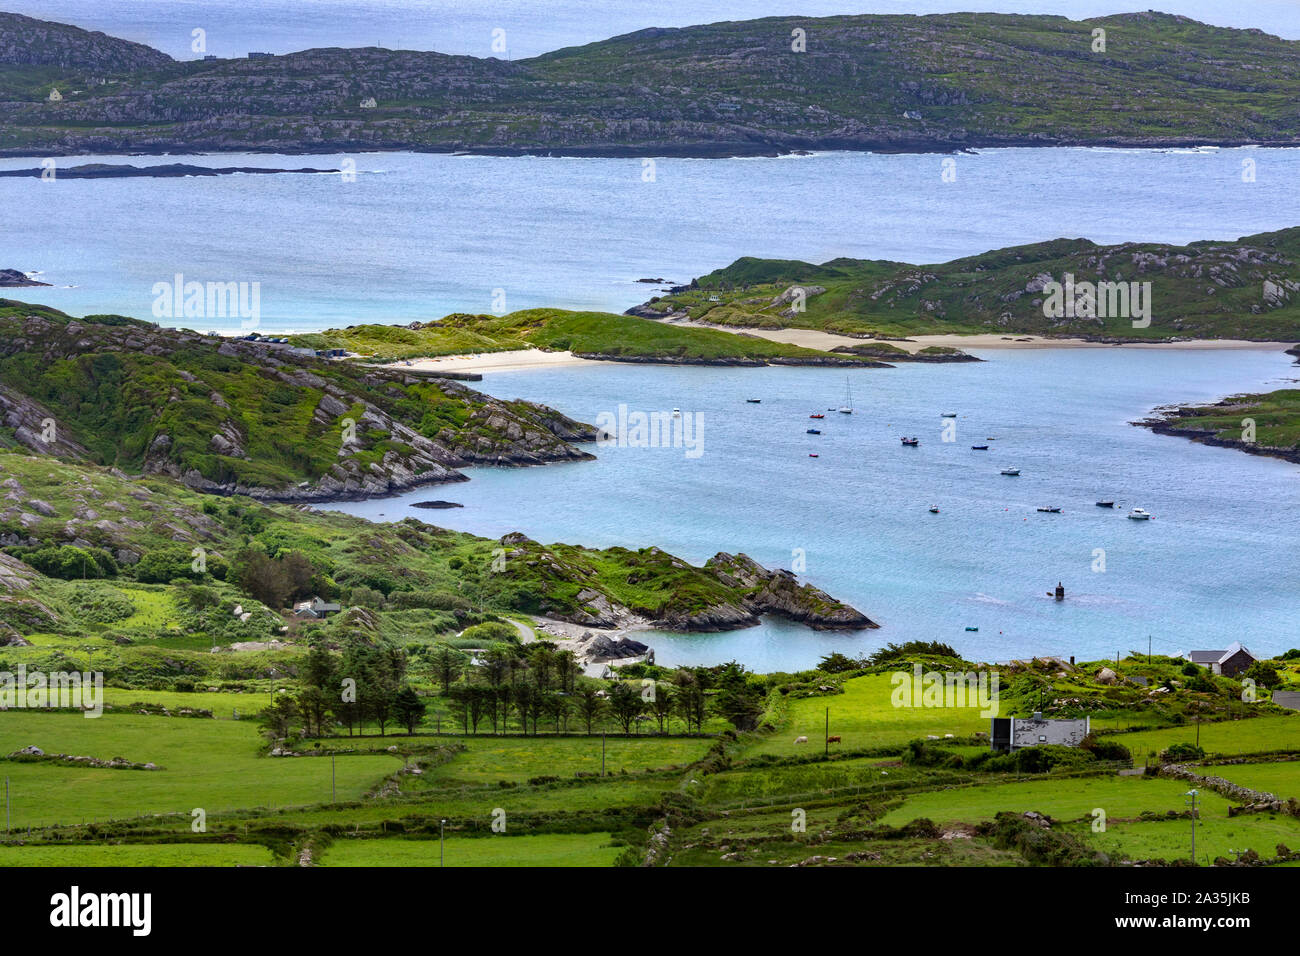 Malerische Küstenlandschaft am Ring of Kerry, ein Teil von den wilden Atlantik Art und Weise an der Westküste der Republik Irland. Stockfoto